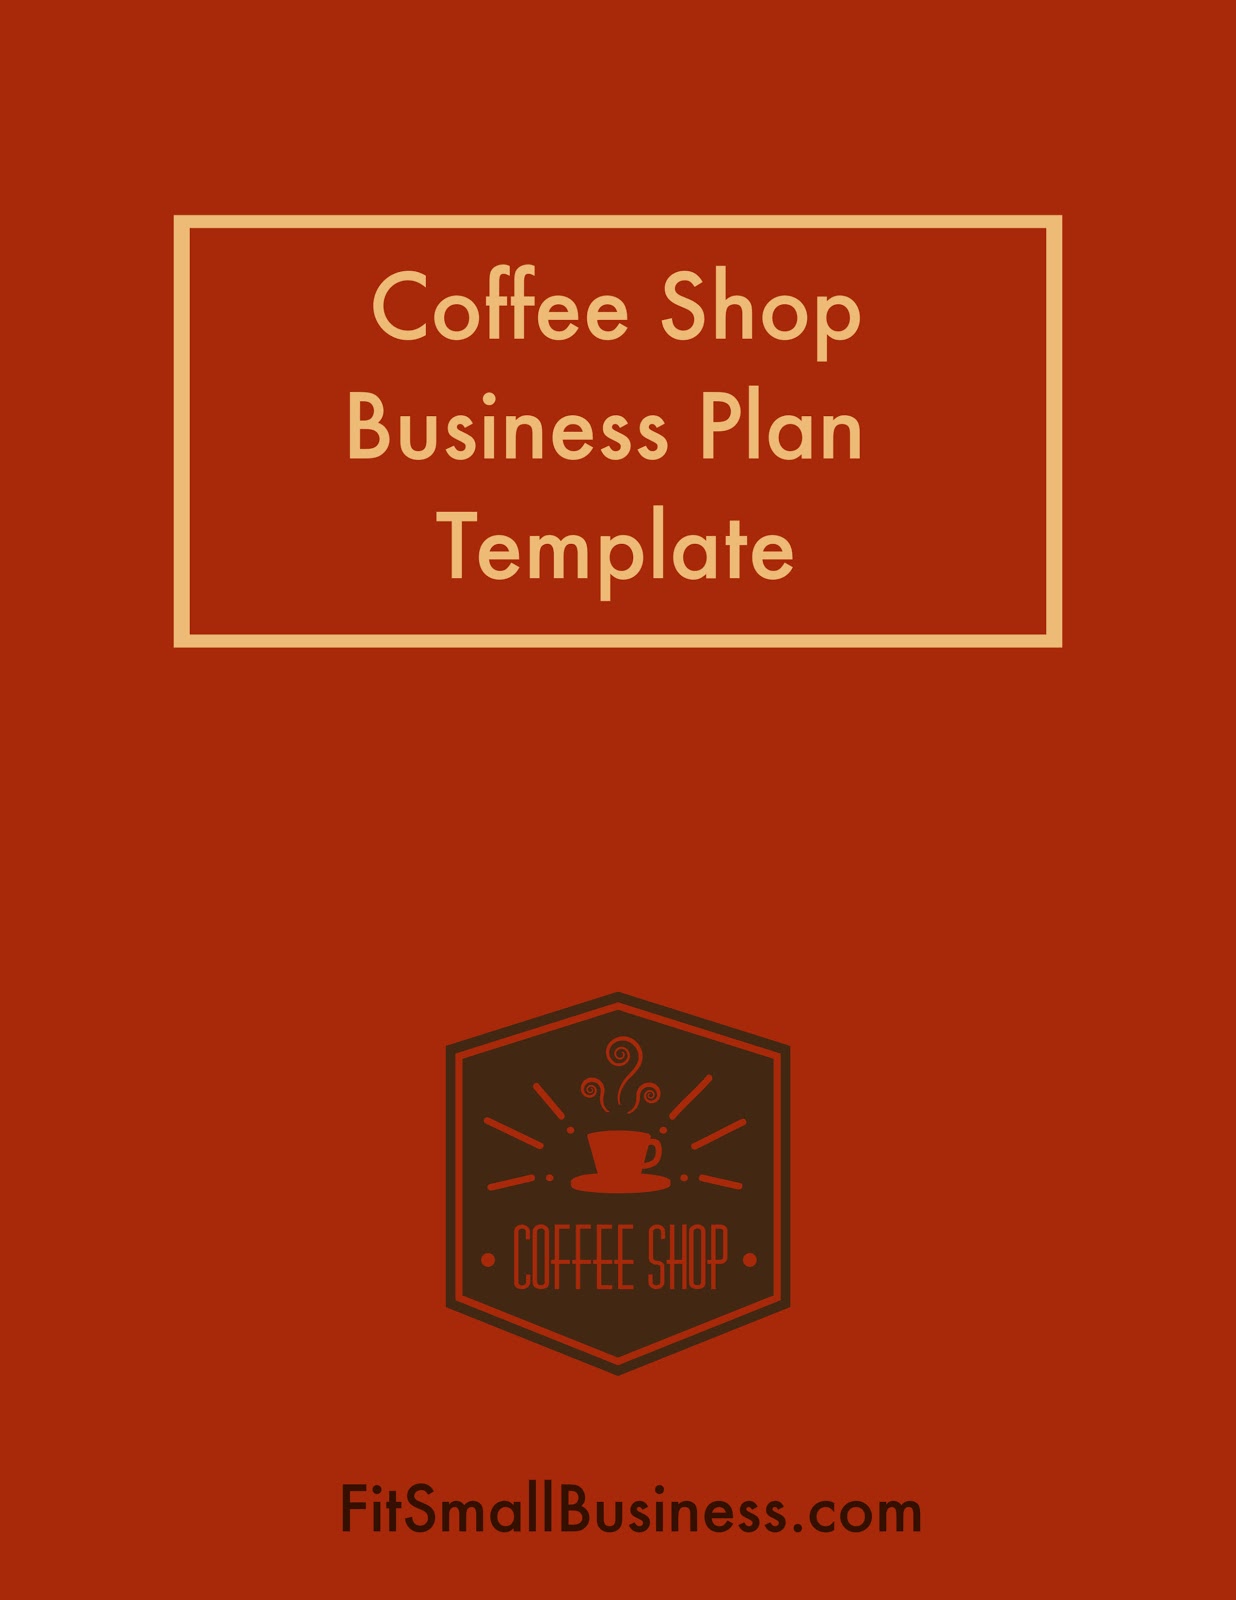 咖啡店商业计划模板